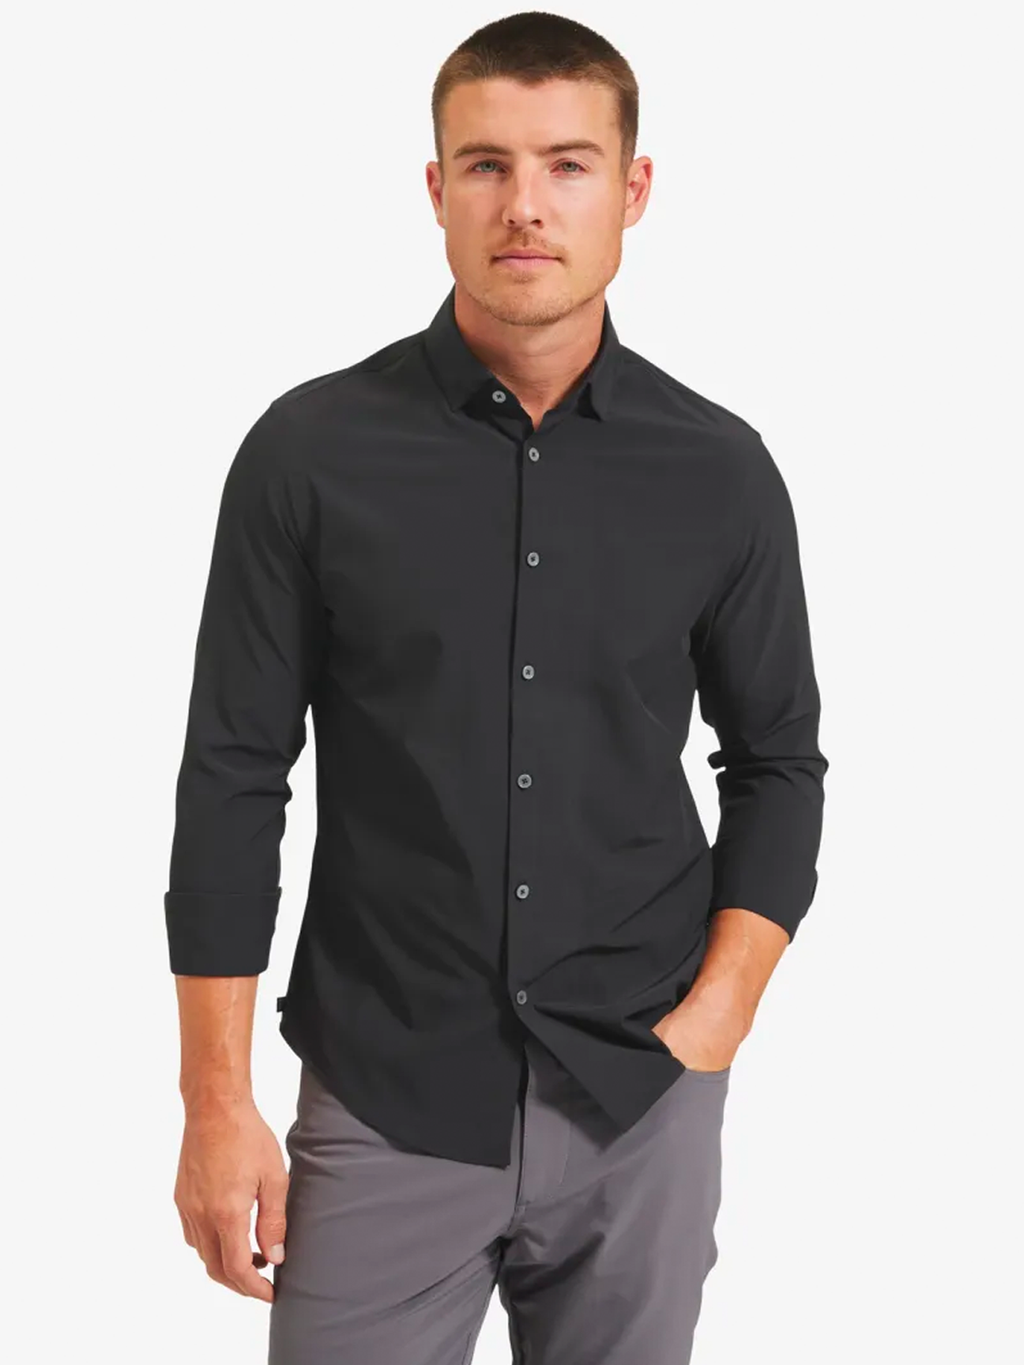 Leeward No Tuck Shirt in Black Solid